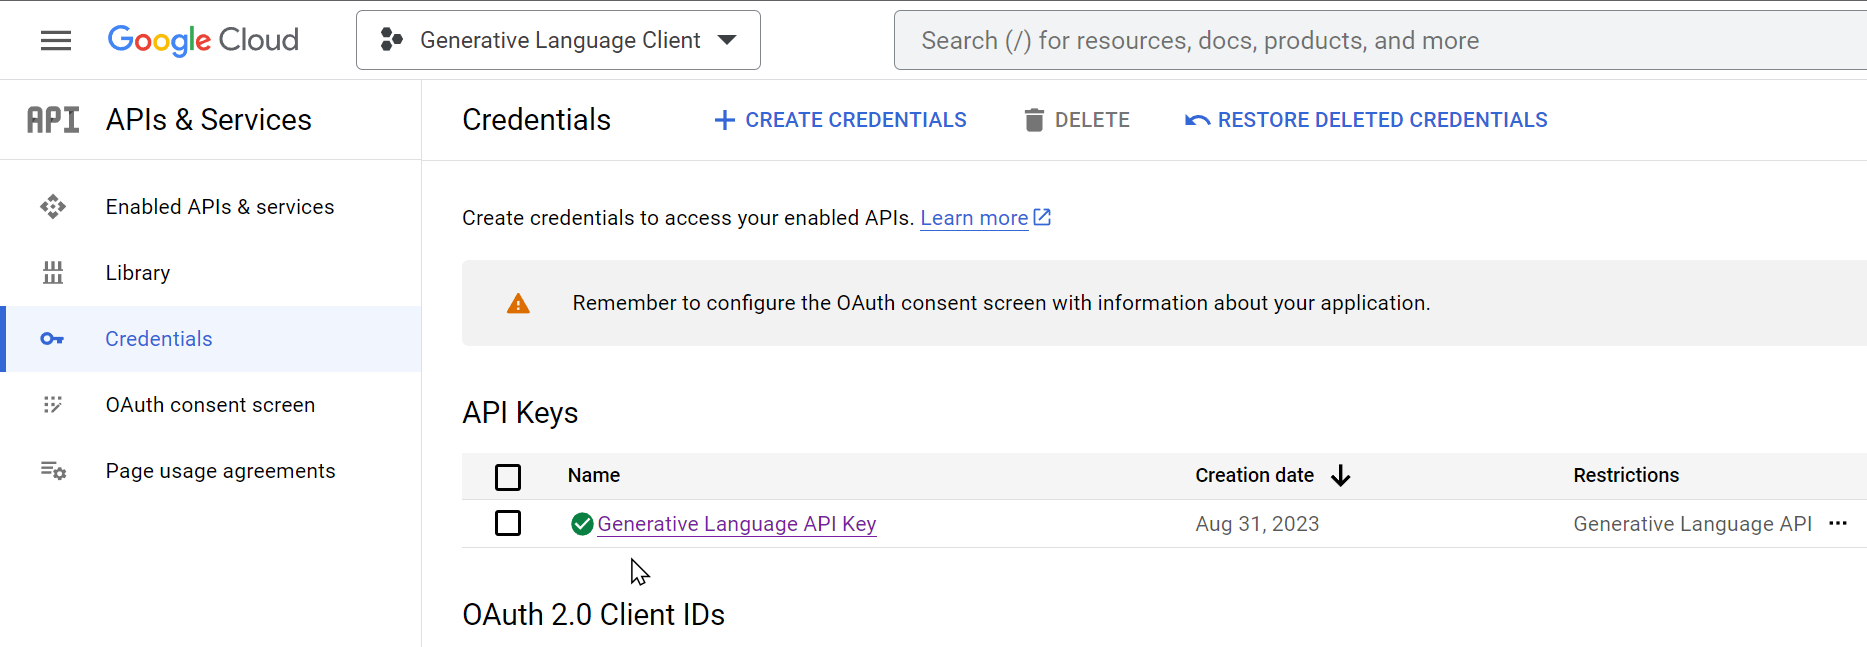 APIs & Services - Credentials - API Keys